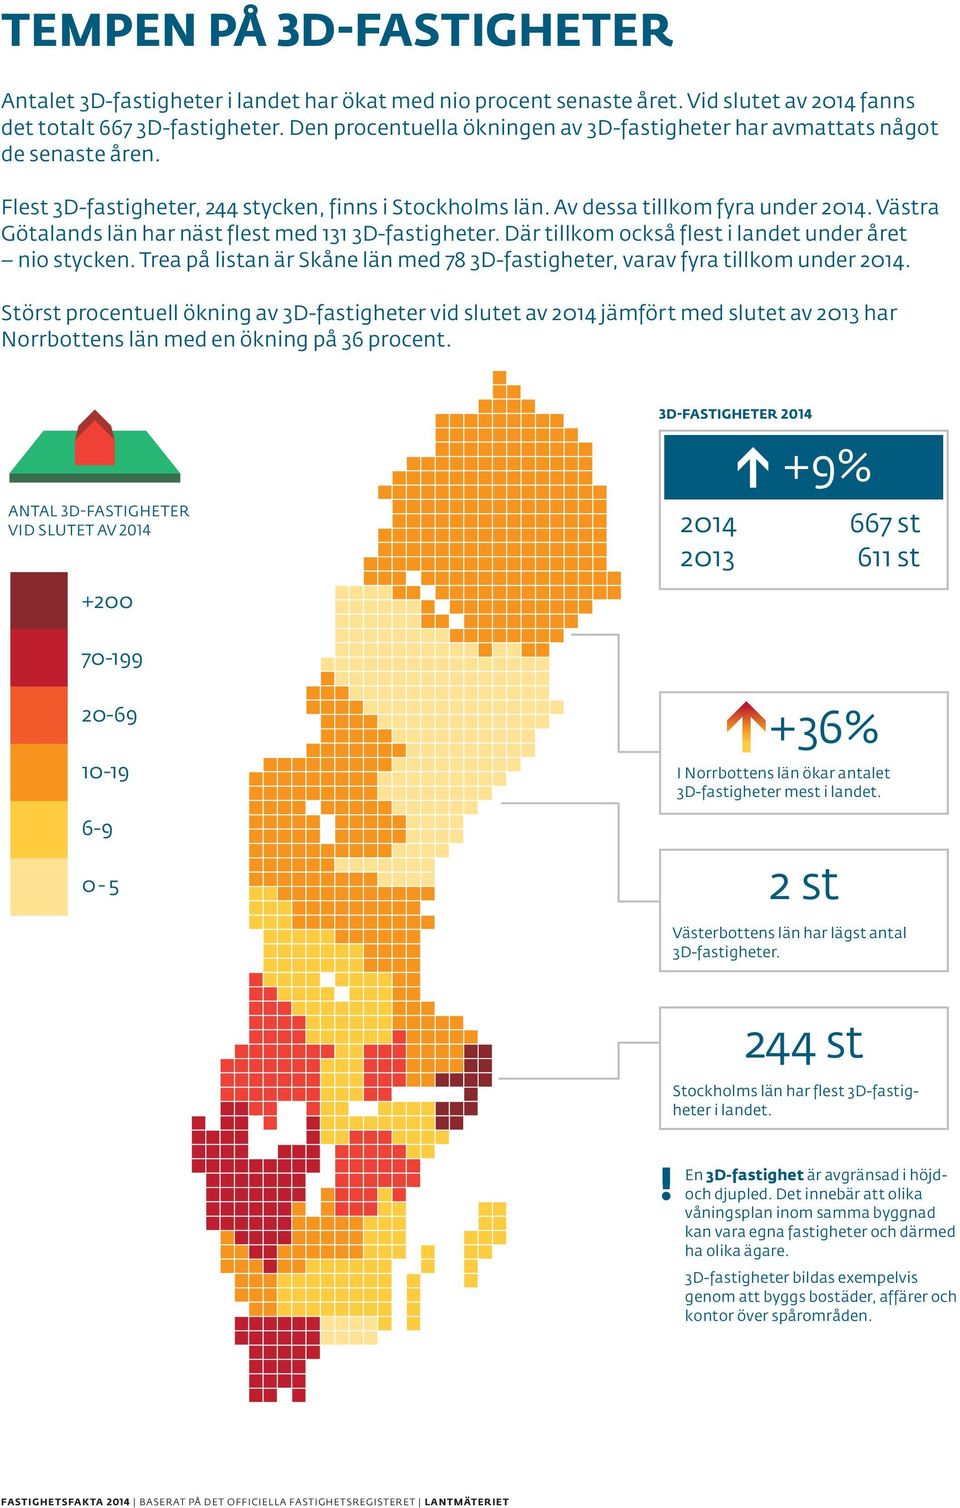 Västra vid slutet Götalands av 2014 län har näst flest med 131 3D-fastigheter. Där tillkom också flest i landet under året nio stycken.